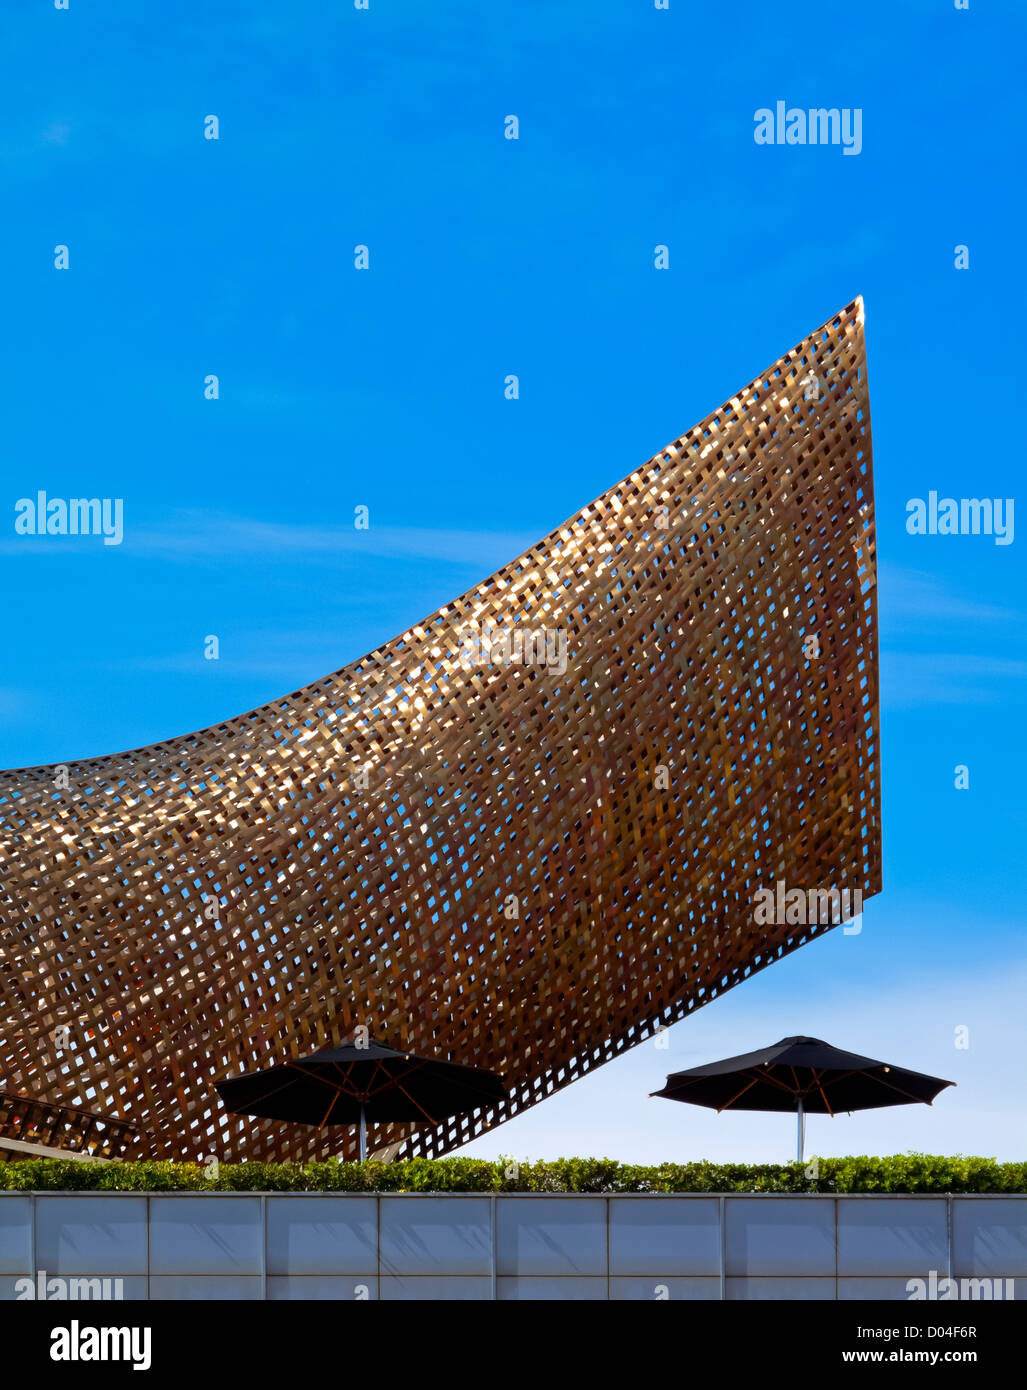 Detail der Fisch Skulptur von Frank Gehry in Barceloneta Port Olimpic Barcelona Katalonien Spanien gebaut 1992 für die Olympischen Spiele Stockfoto